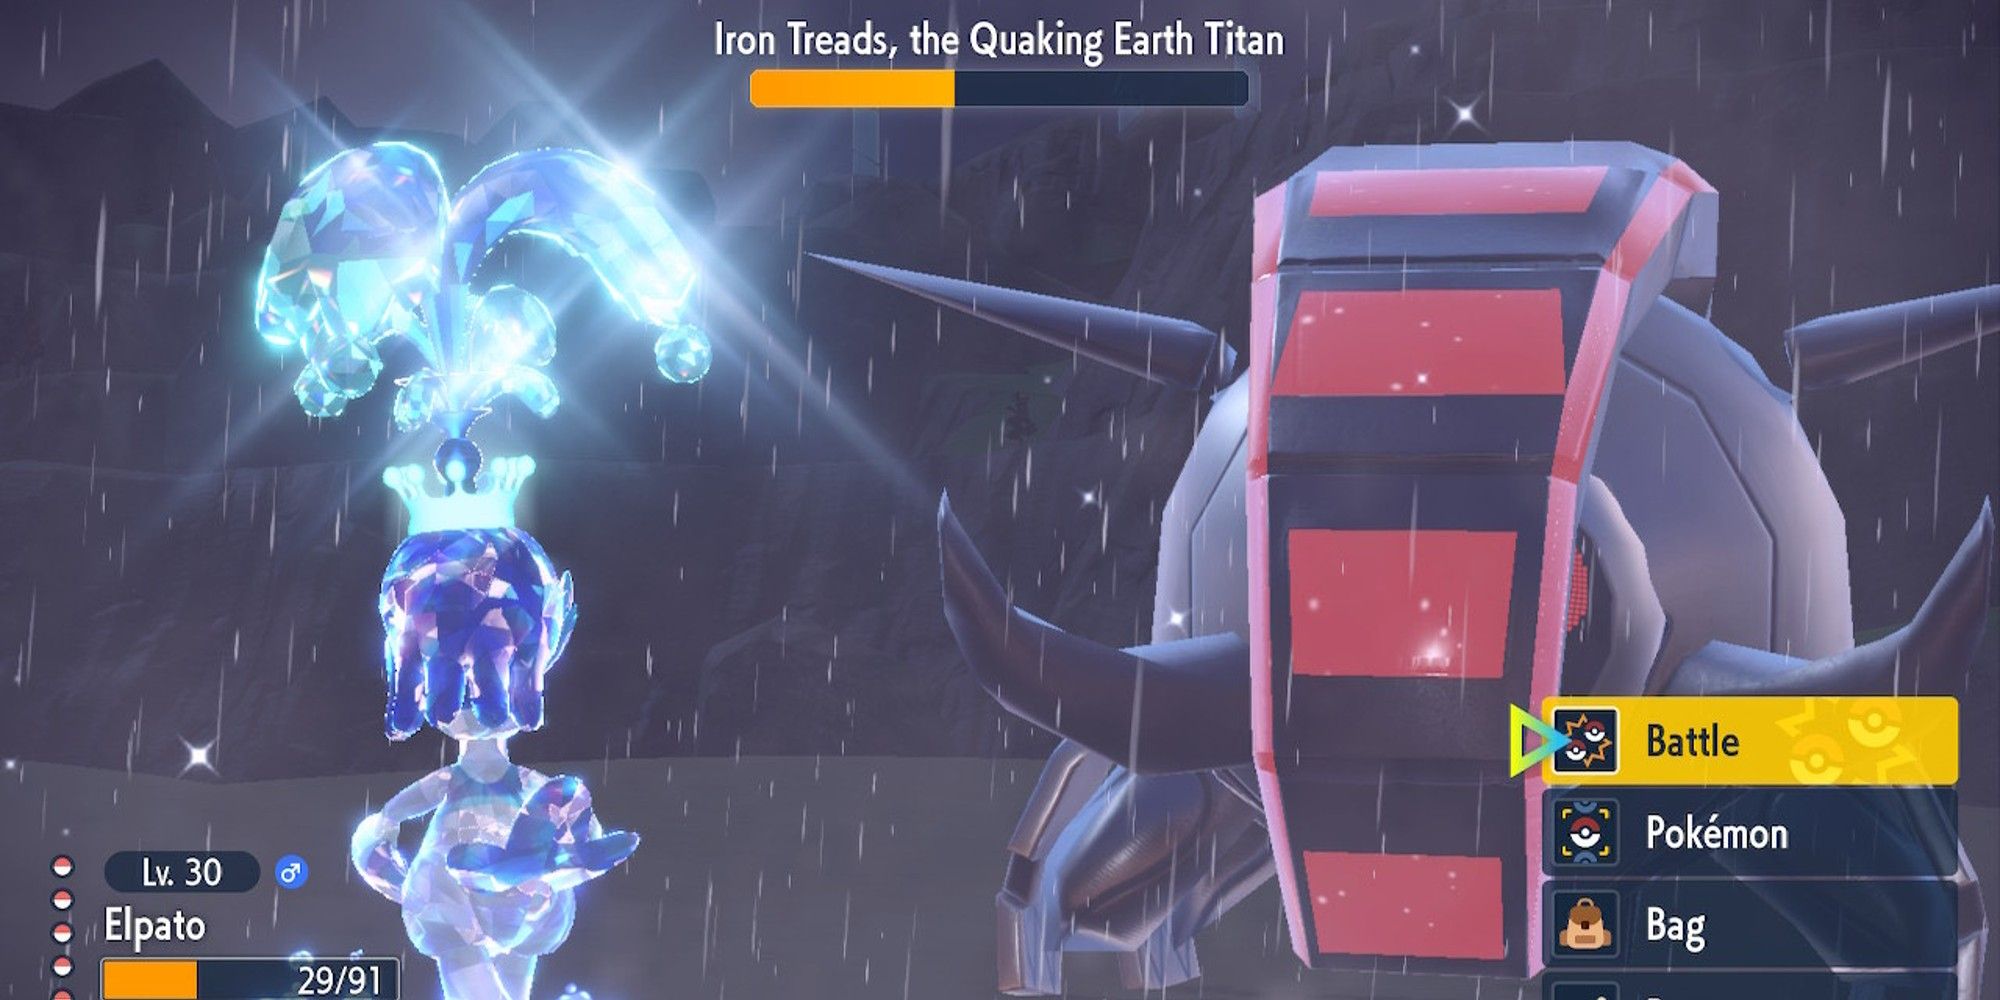 a battle against the quaking earth titan